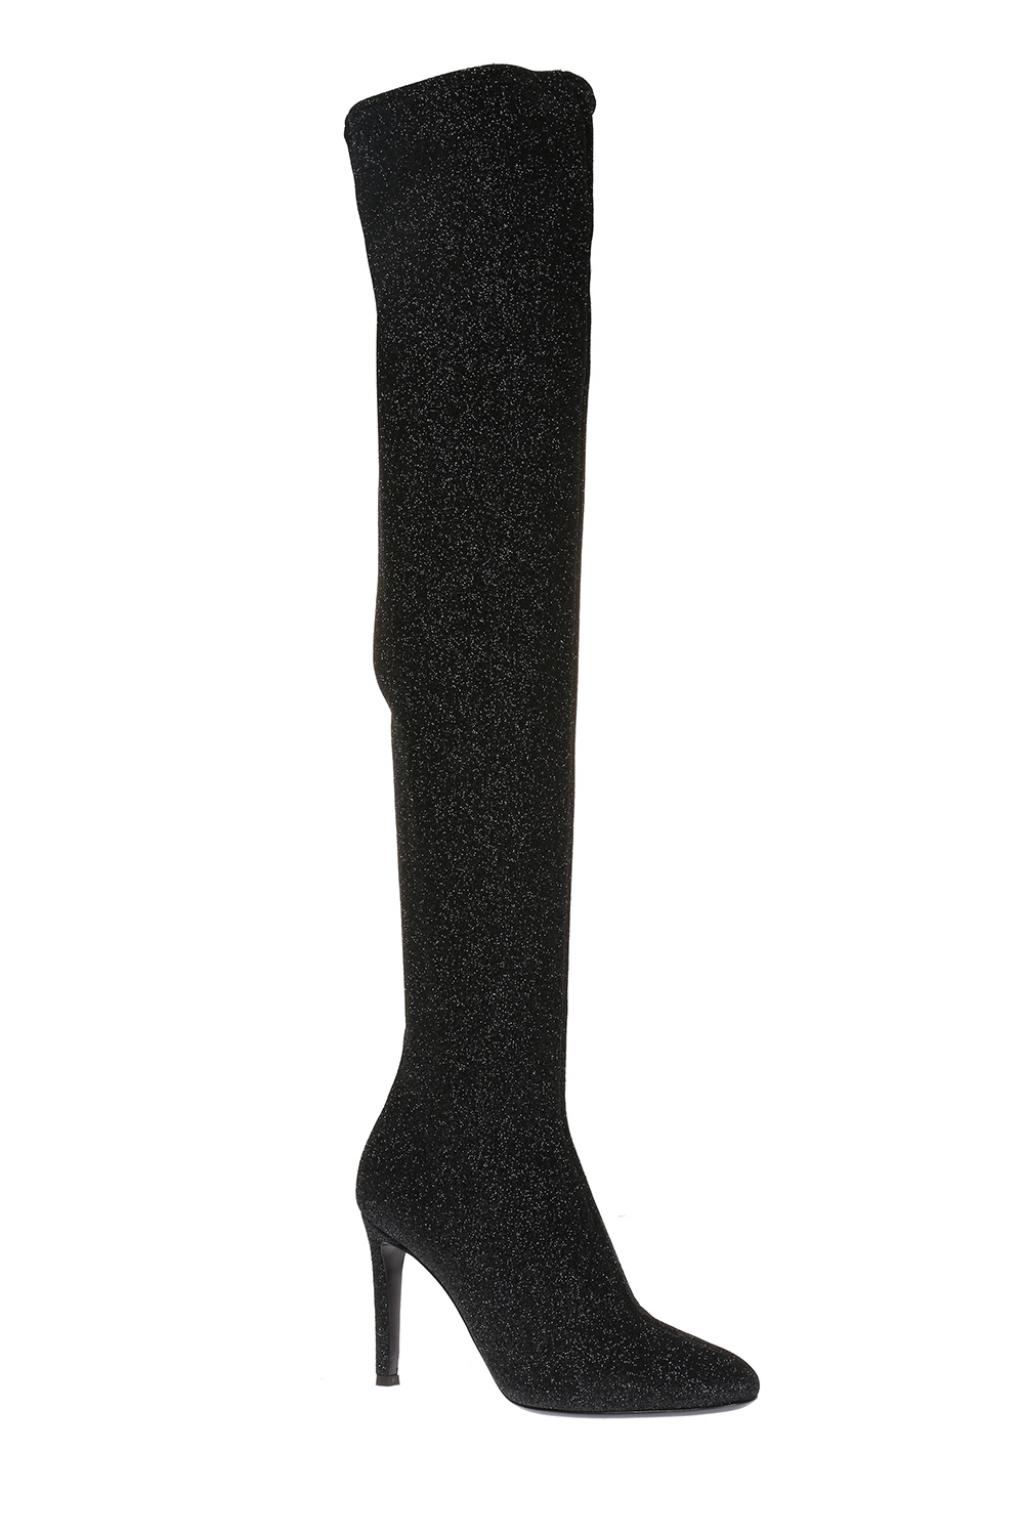 kunstner frisør liv Giuseppe Zanotti 'Felicity' over-the-knee boots with sock | Women's Shoes |  Vitkac